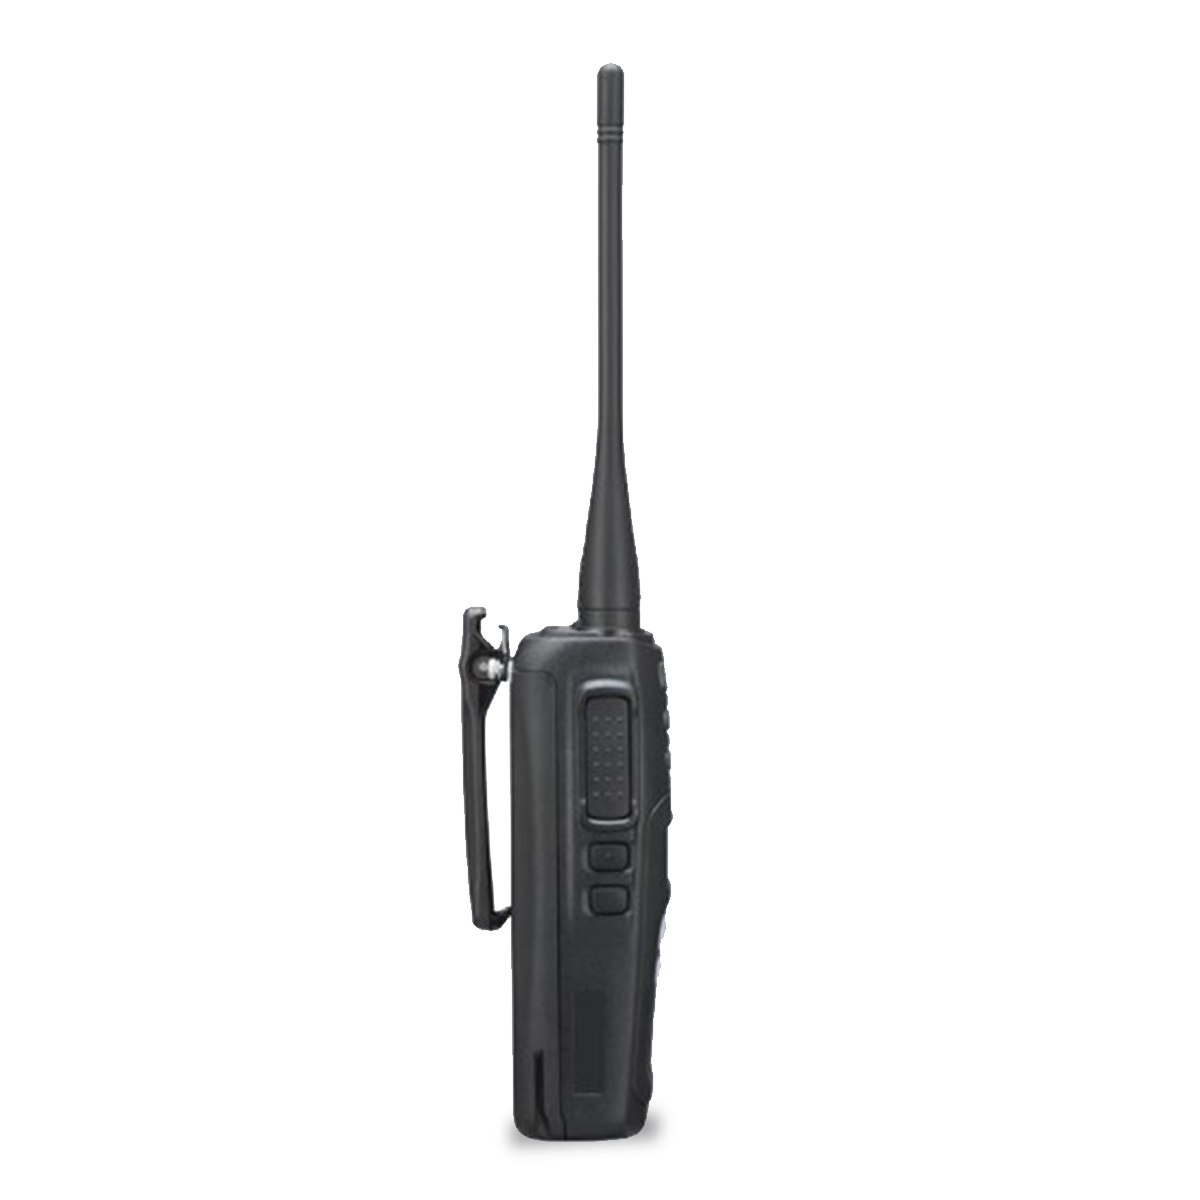 Radio KENWOOD NX-1300-DK4-ES Digital UHF 450-520 MHz sin pantalla y sin teclado intrínsecamente seguro